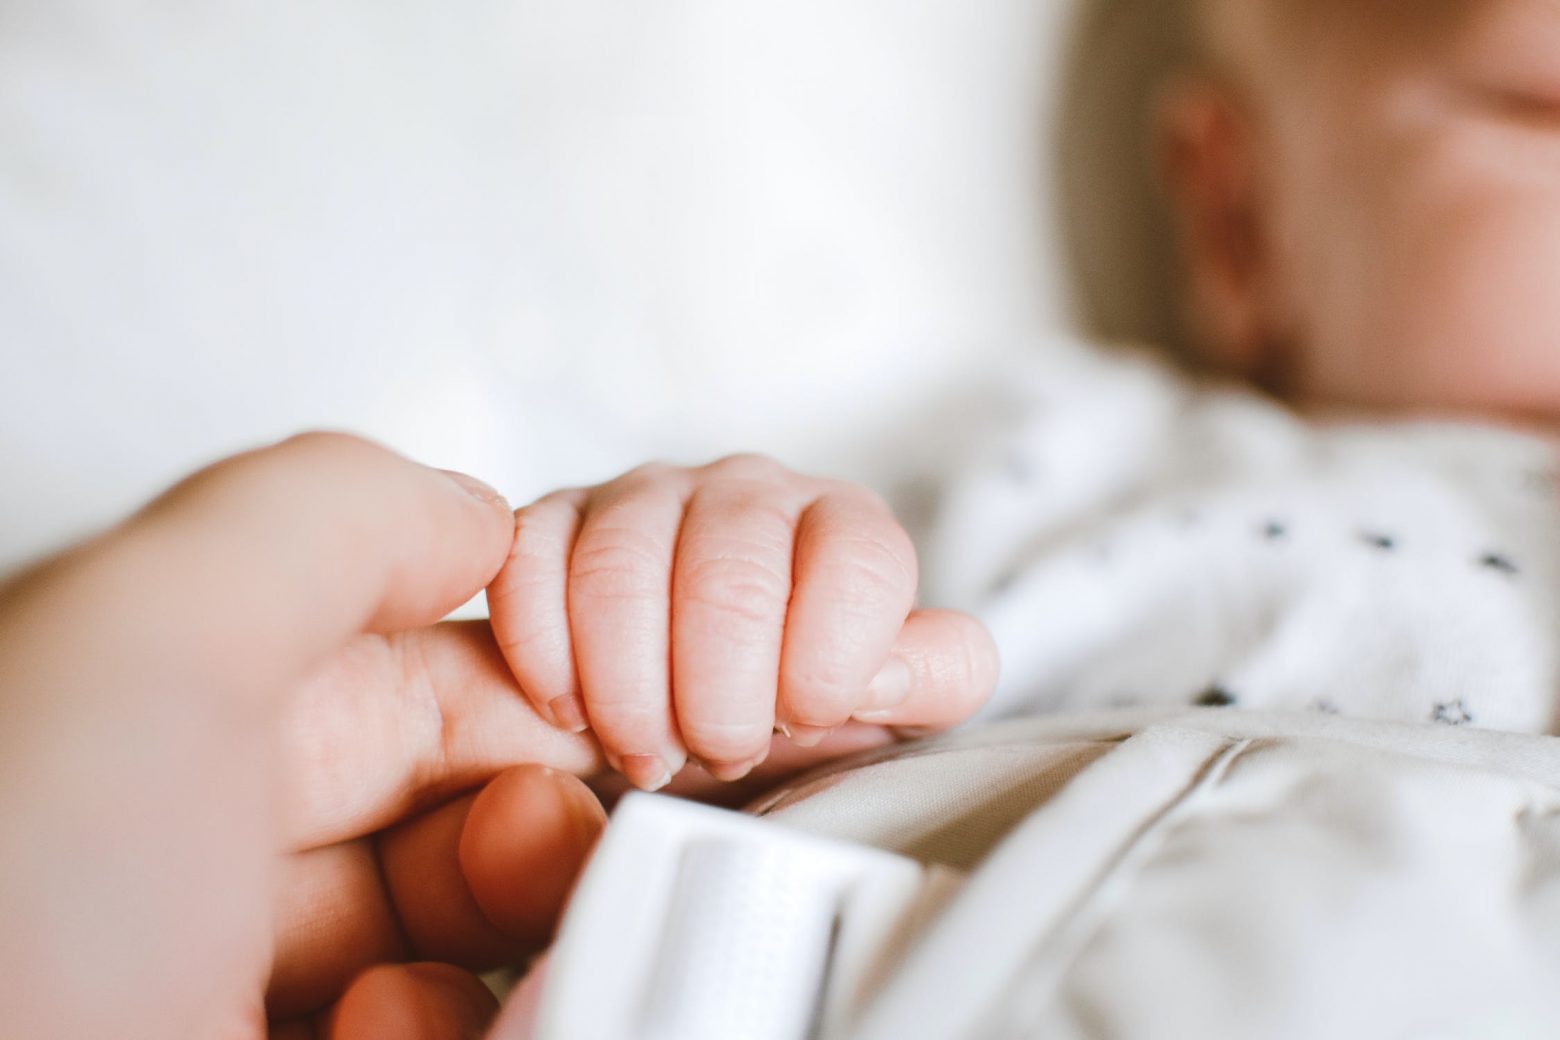 Πάτρα - Μωρό μόλις 20 ημερών νοσηλεύεται με κοροναϊό